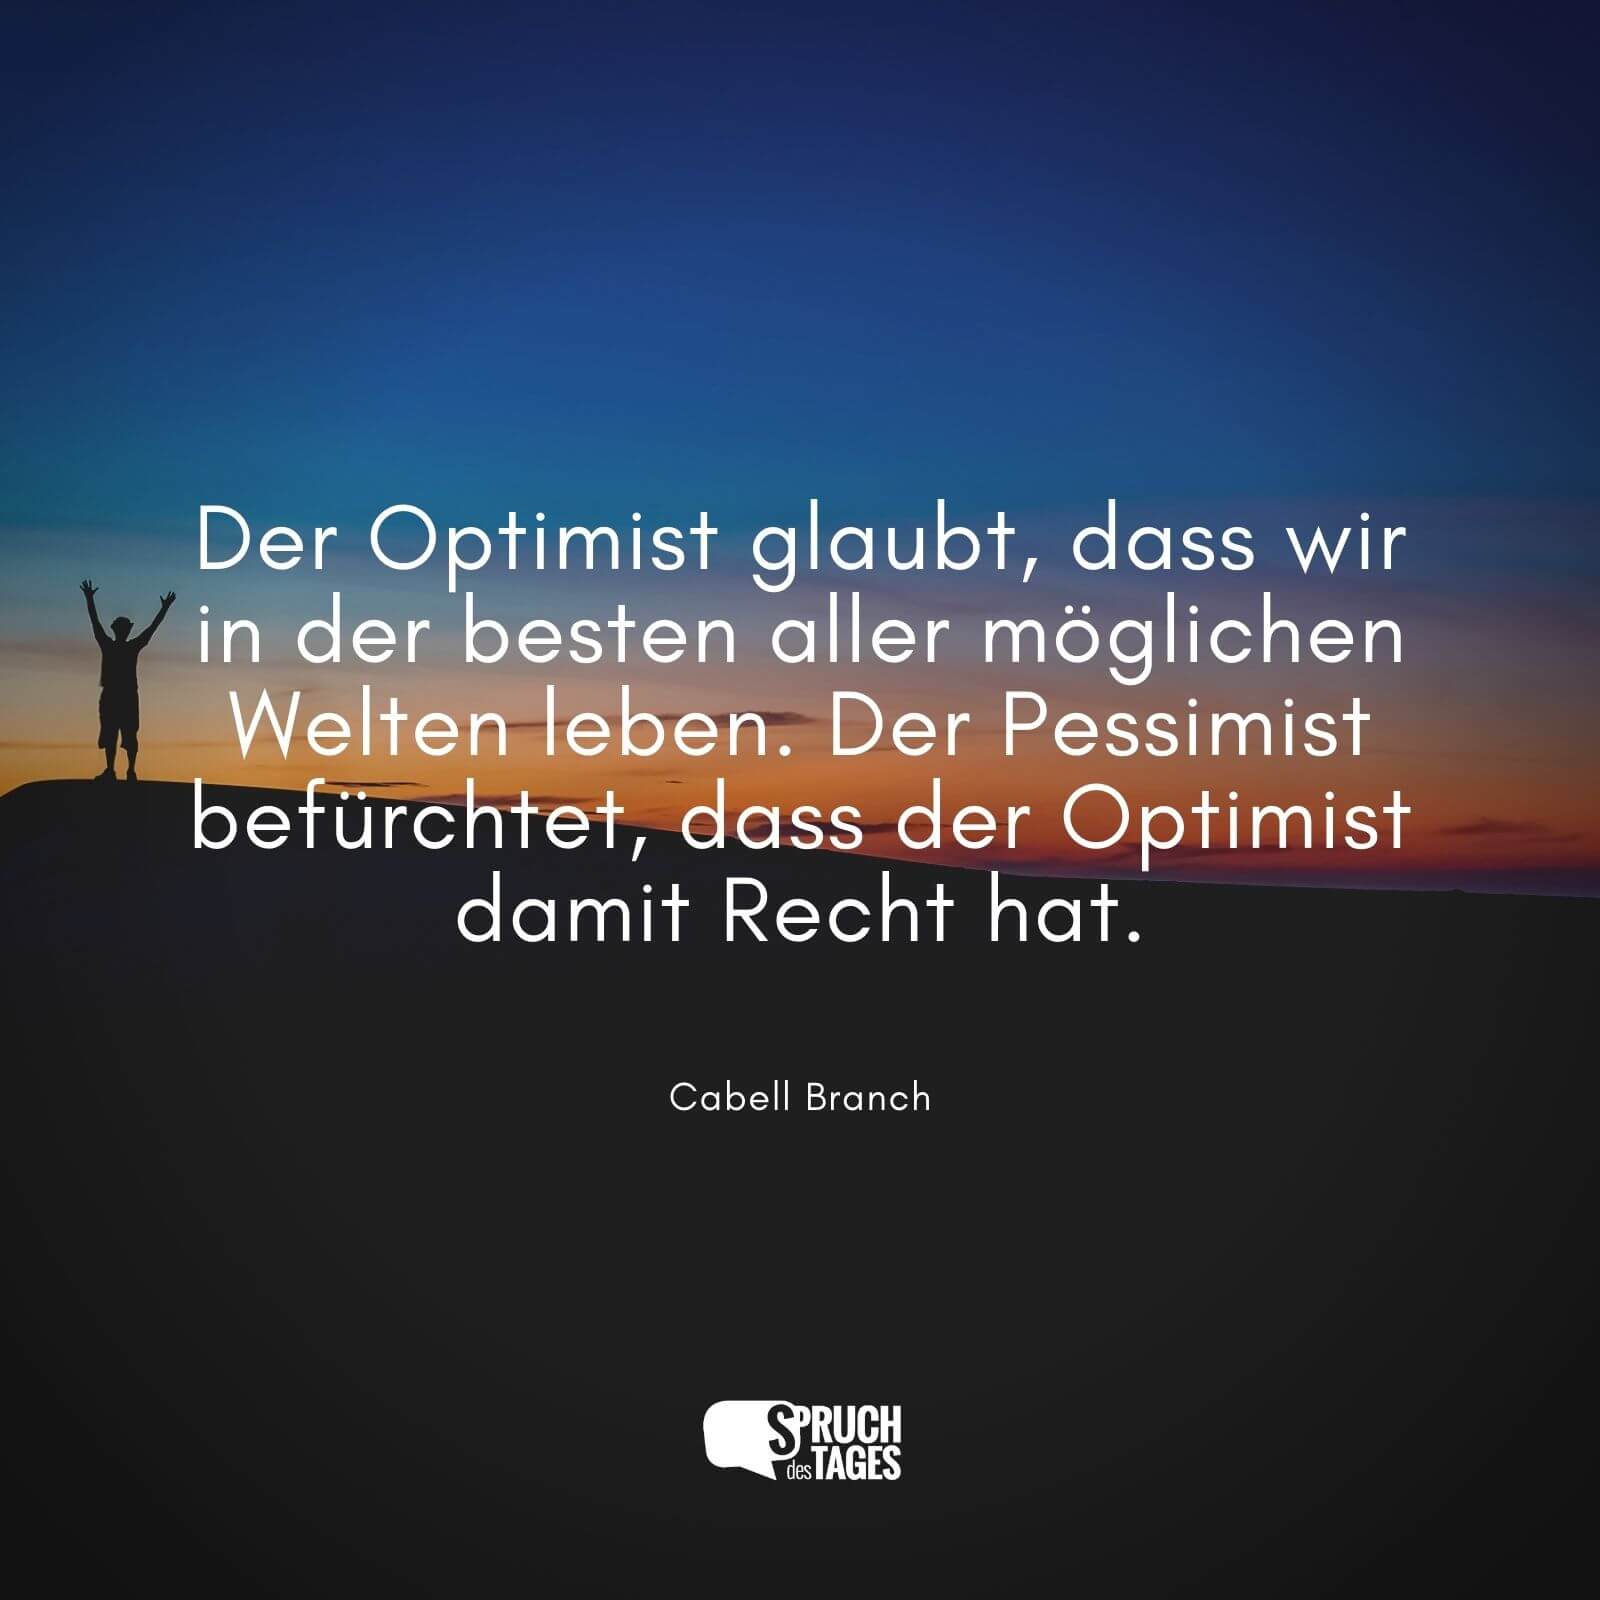 Der Optimist glaubt, dass wir in der besten aller möglichen Welten leben. Der Pessimist befürchtet, dass der Optimist damit Recht hat.